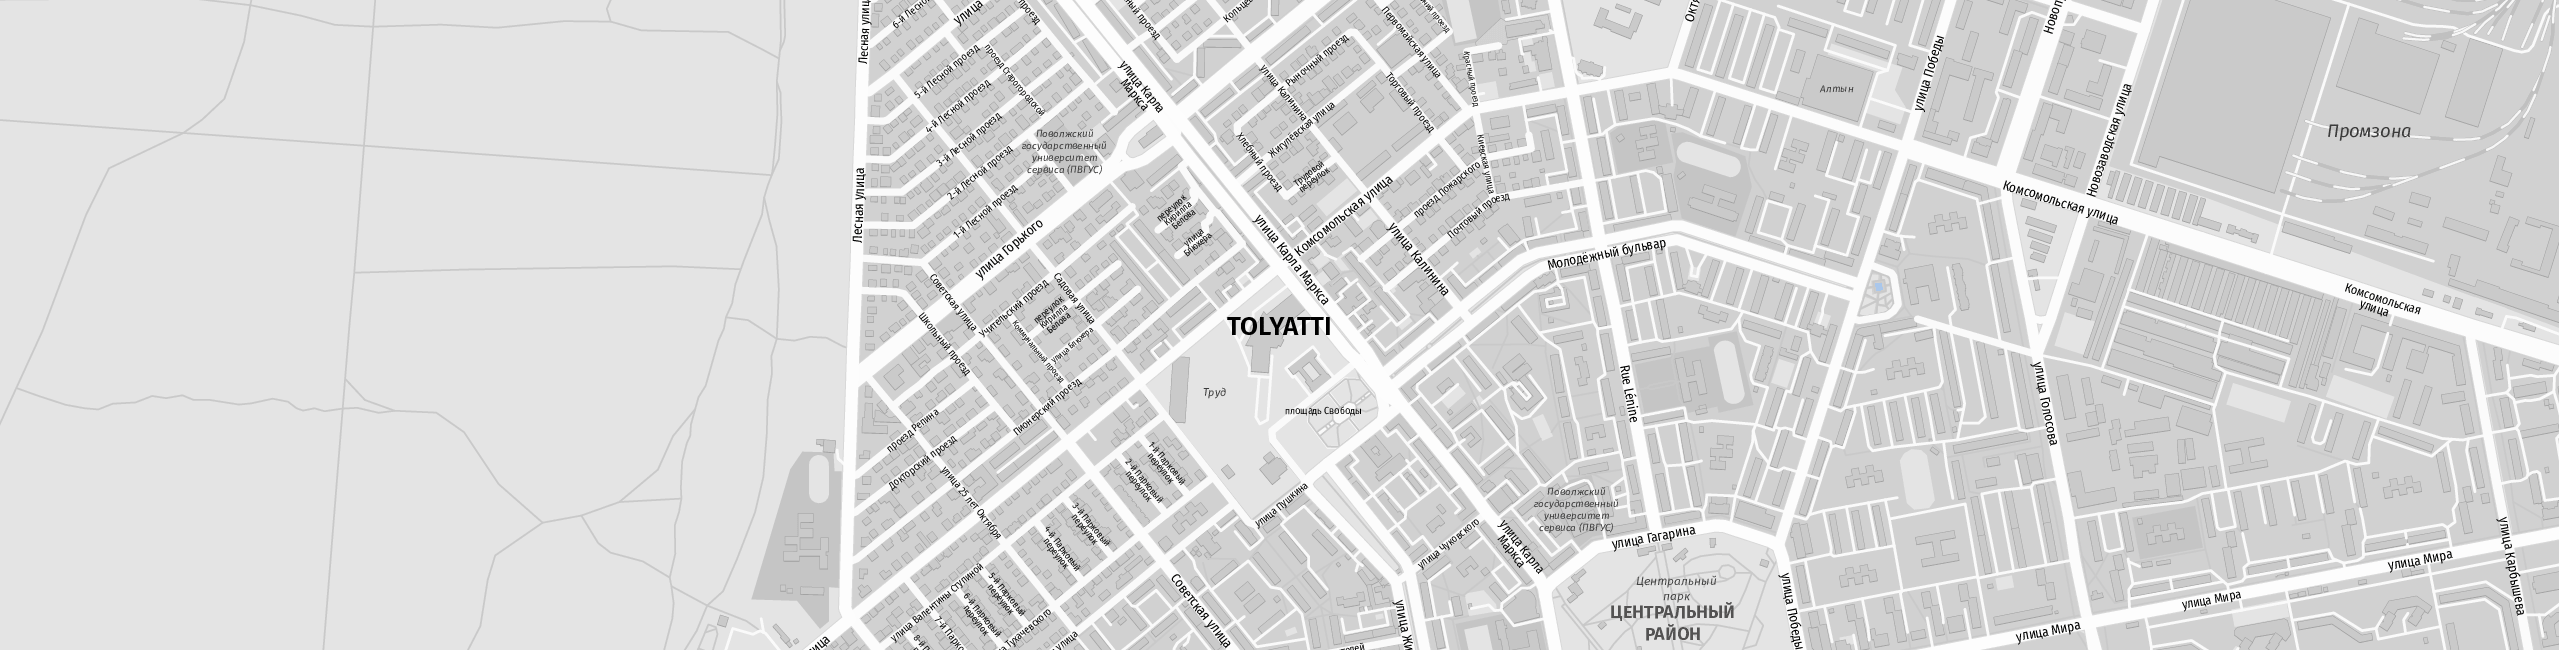 Stadtplan Tolyatti zum Downloaden.